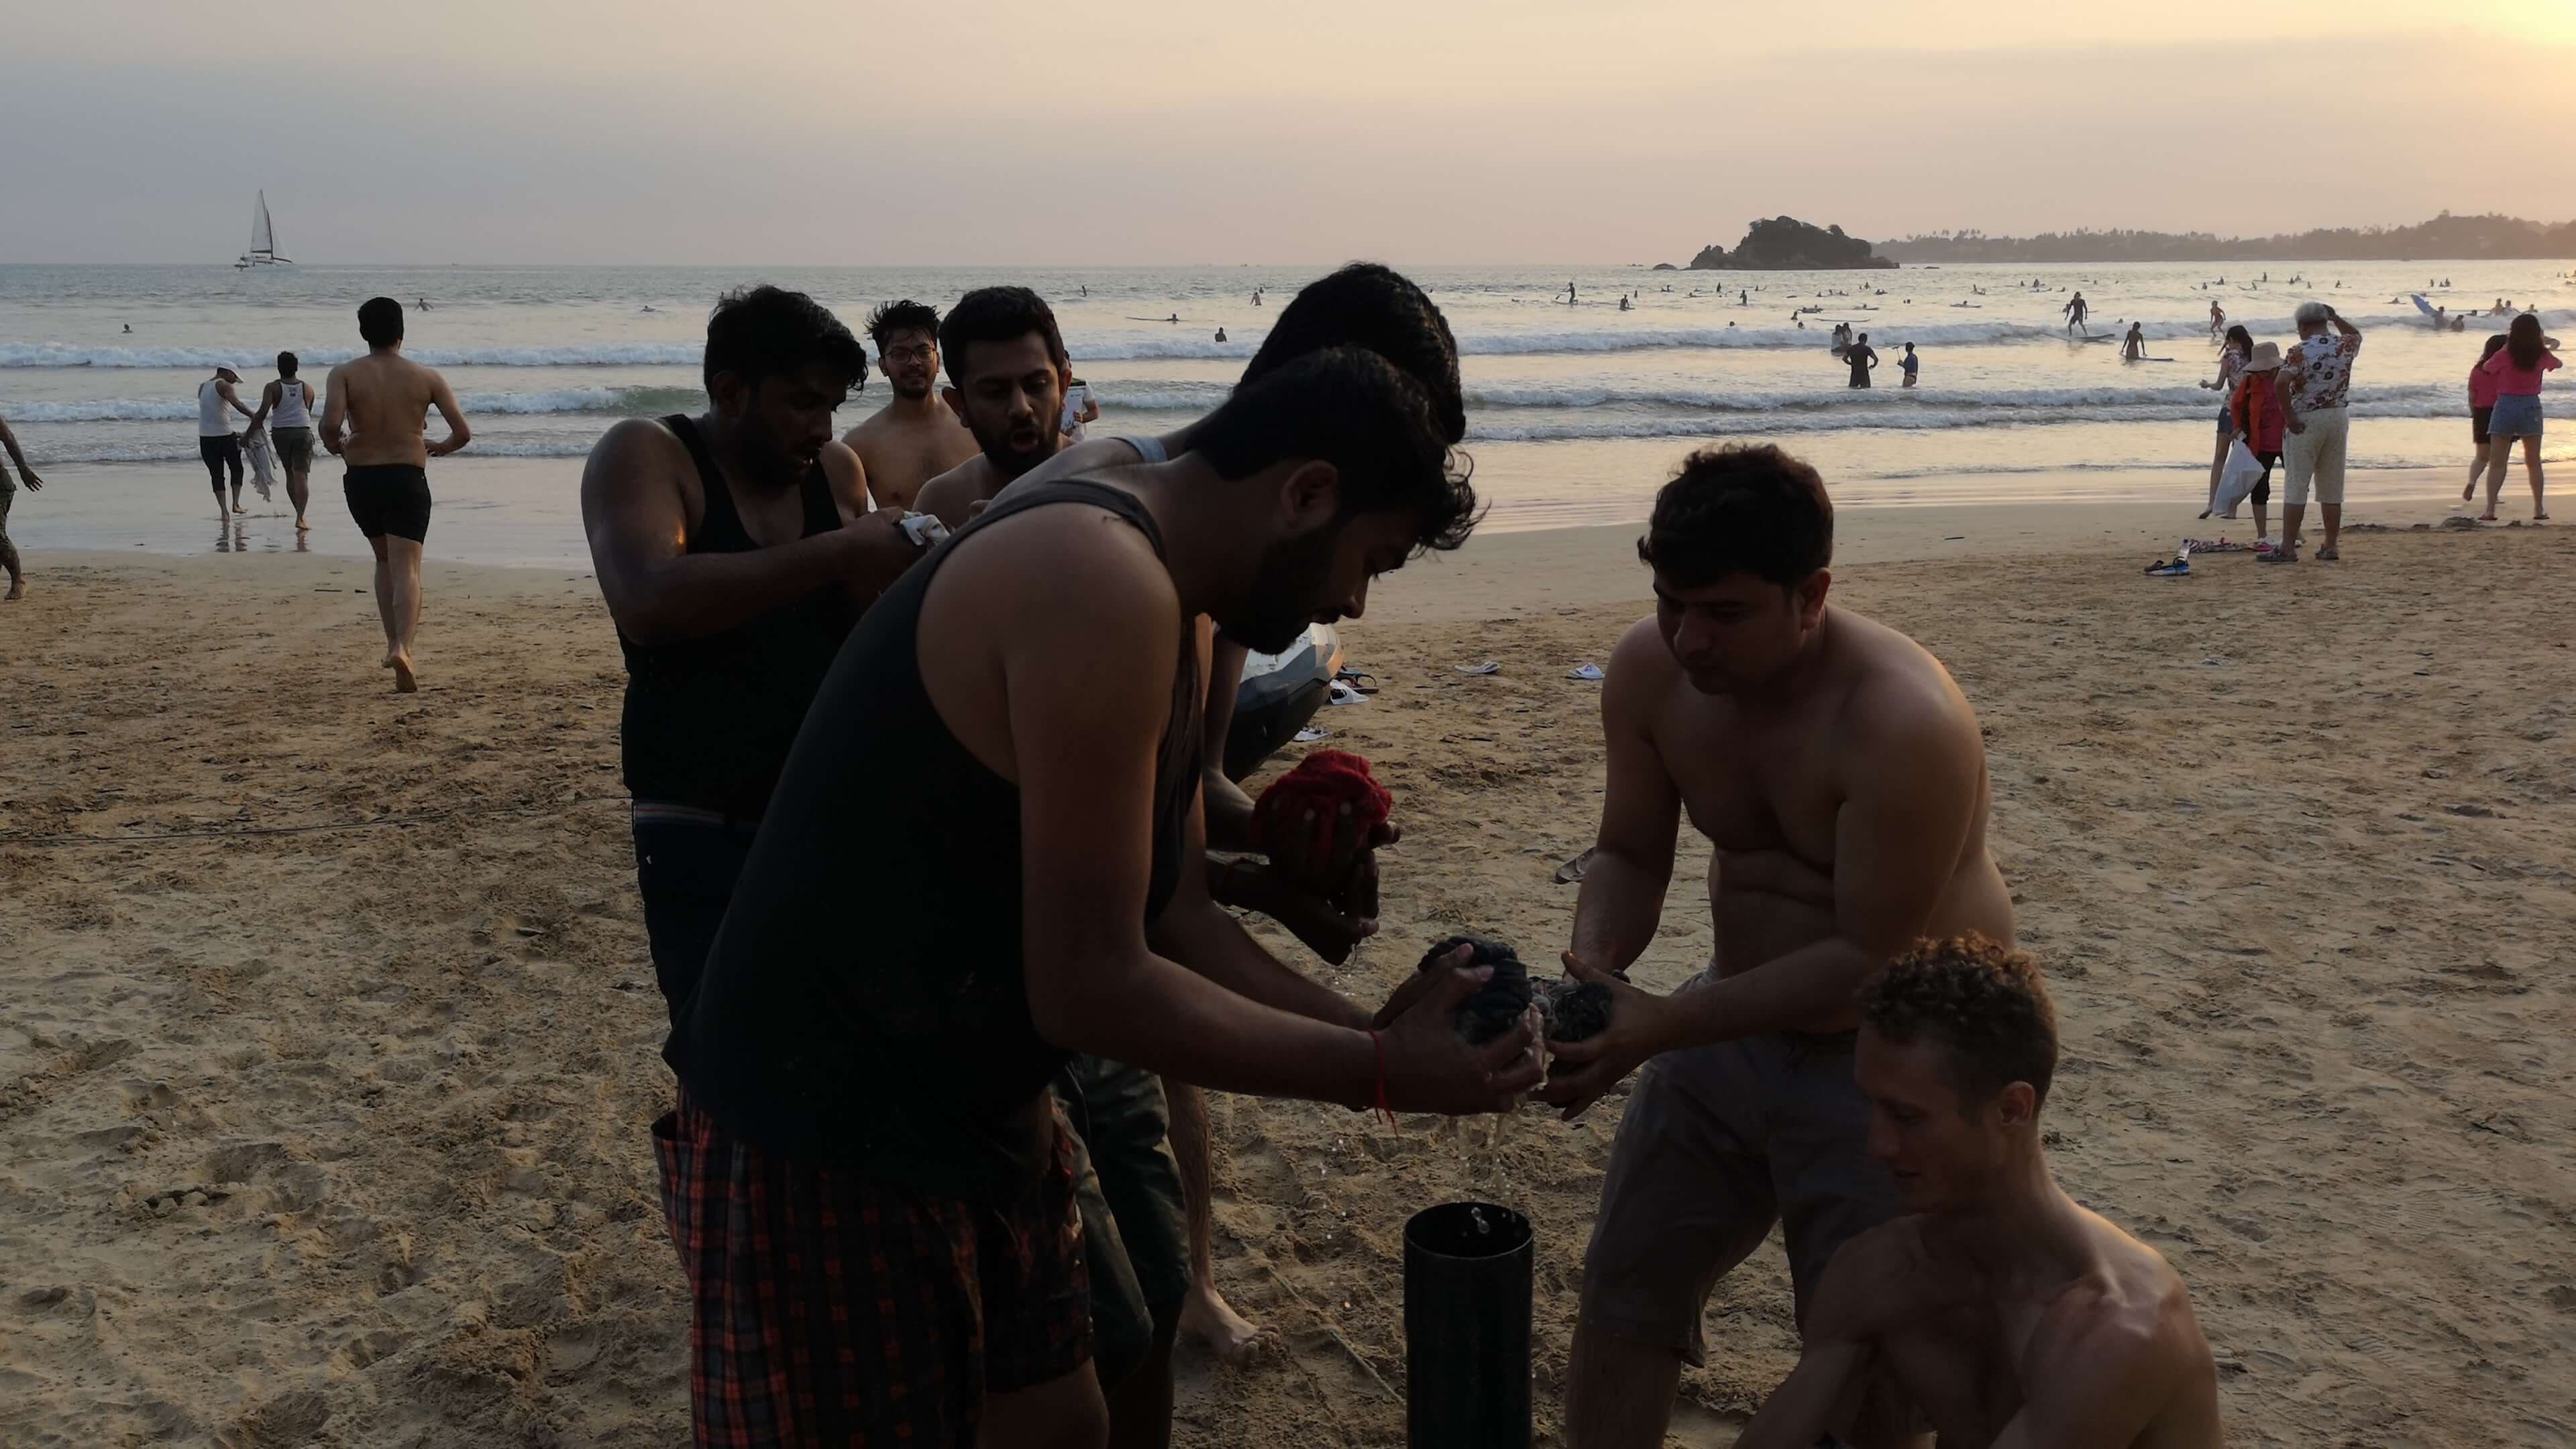 Participando en actividades de formación de equipos en la playa, Sri Lanka.